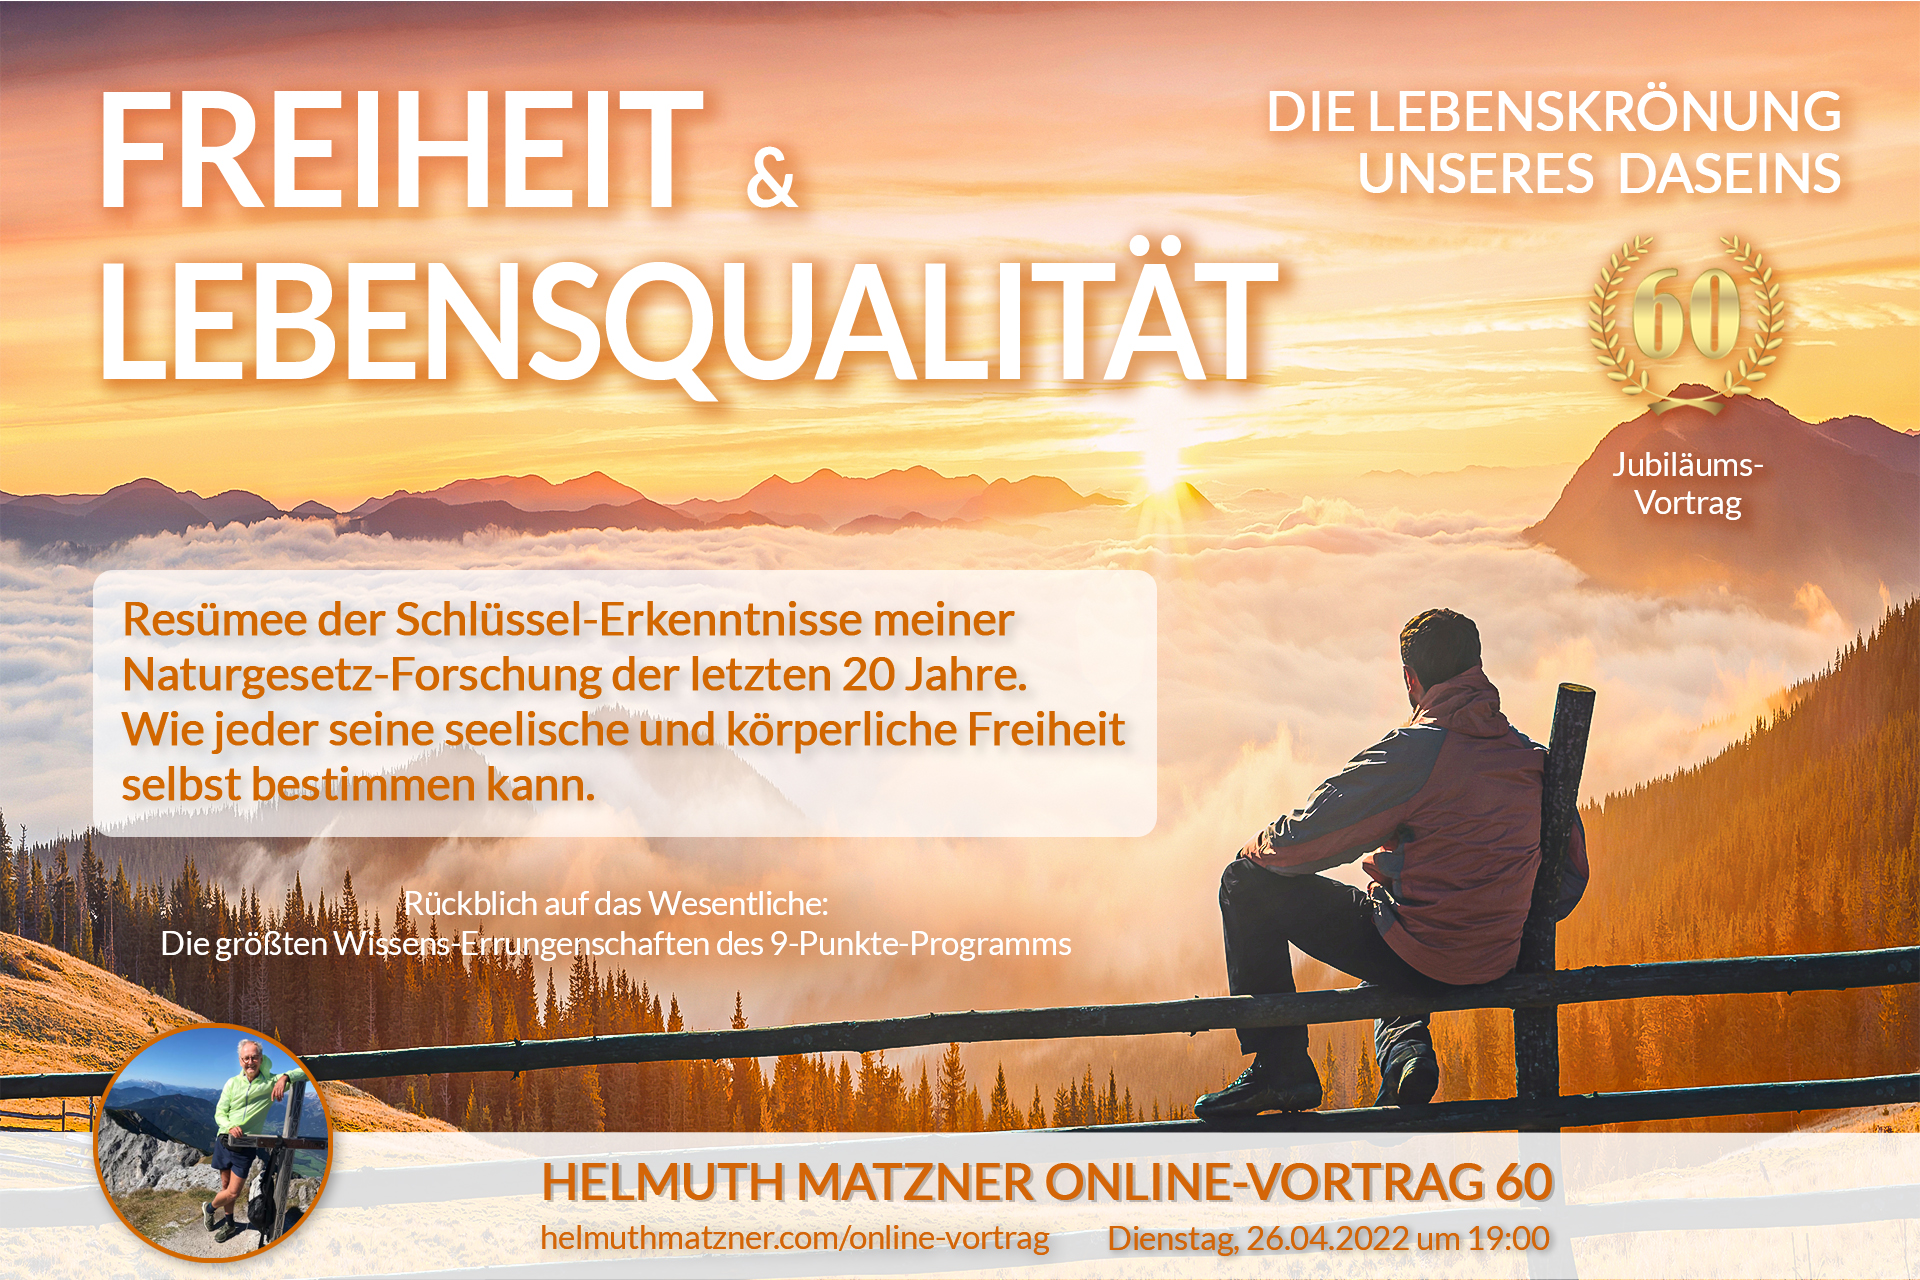 Helmuth Matzner - Online-Vortrag 60 - Freiheit Lebensqualität - LP BANNER v01